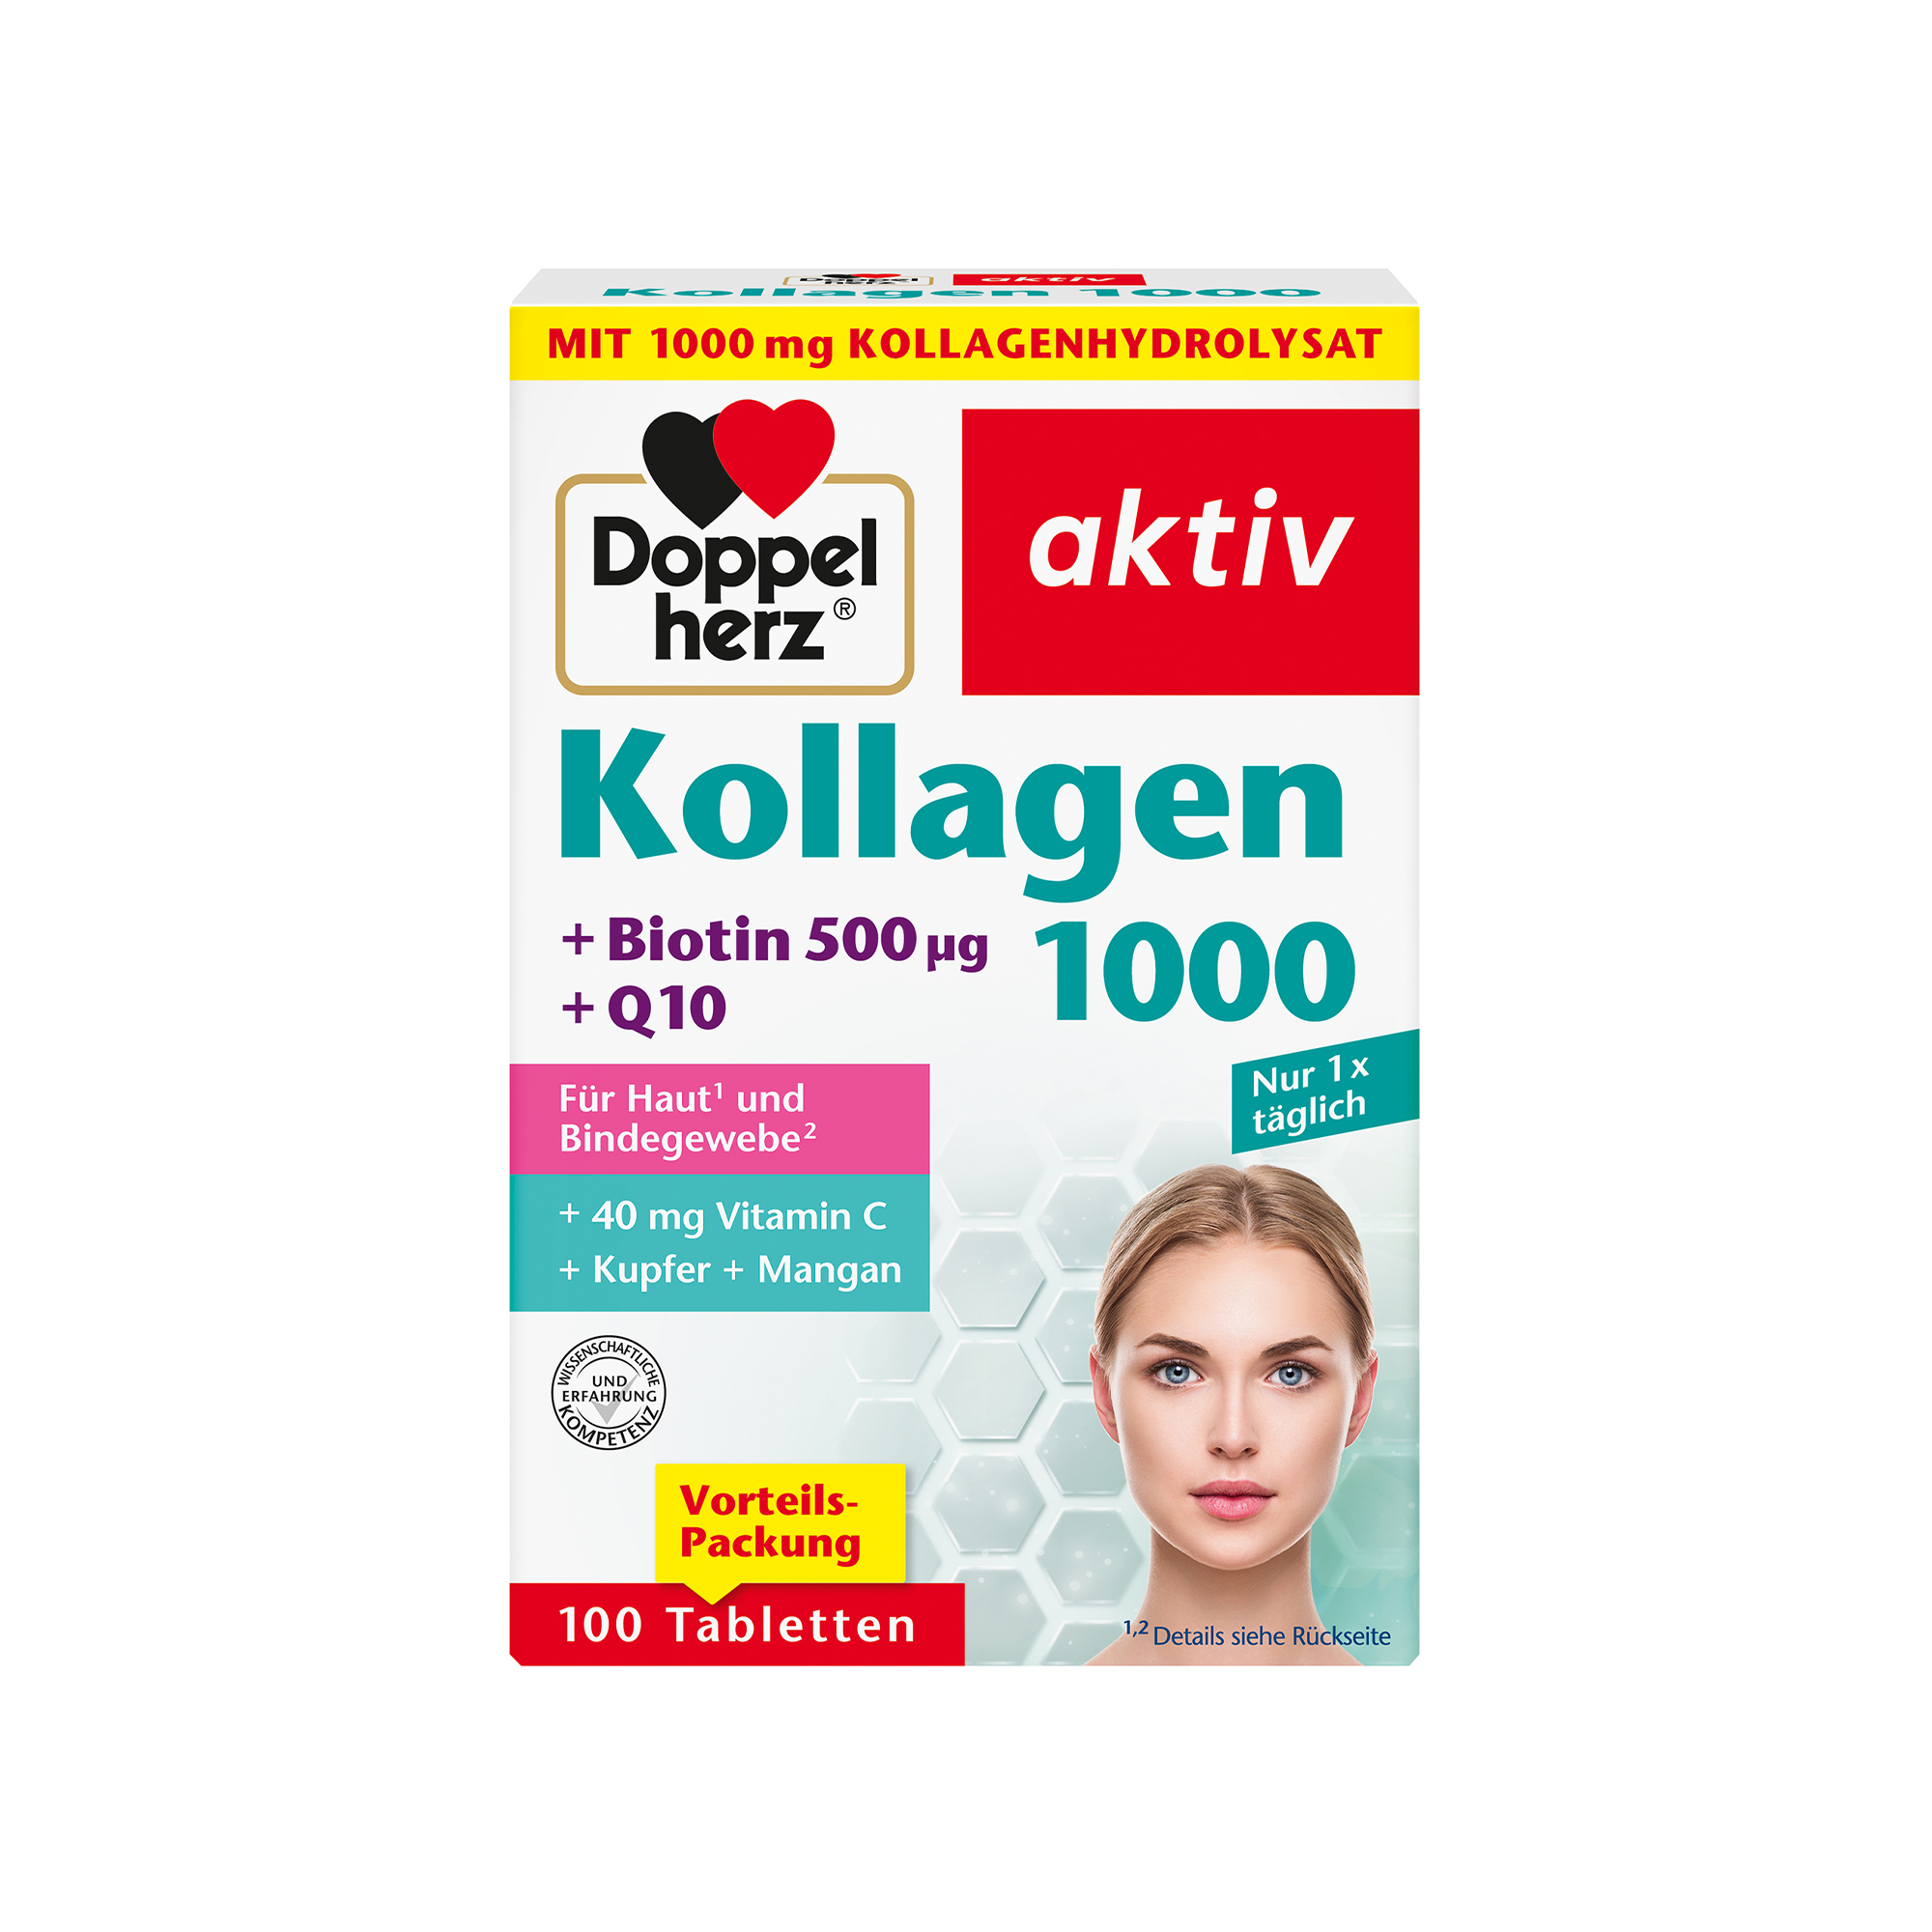 Doppelherz aktiv Kollagen 1000, 100 Tabletten